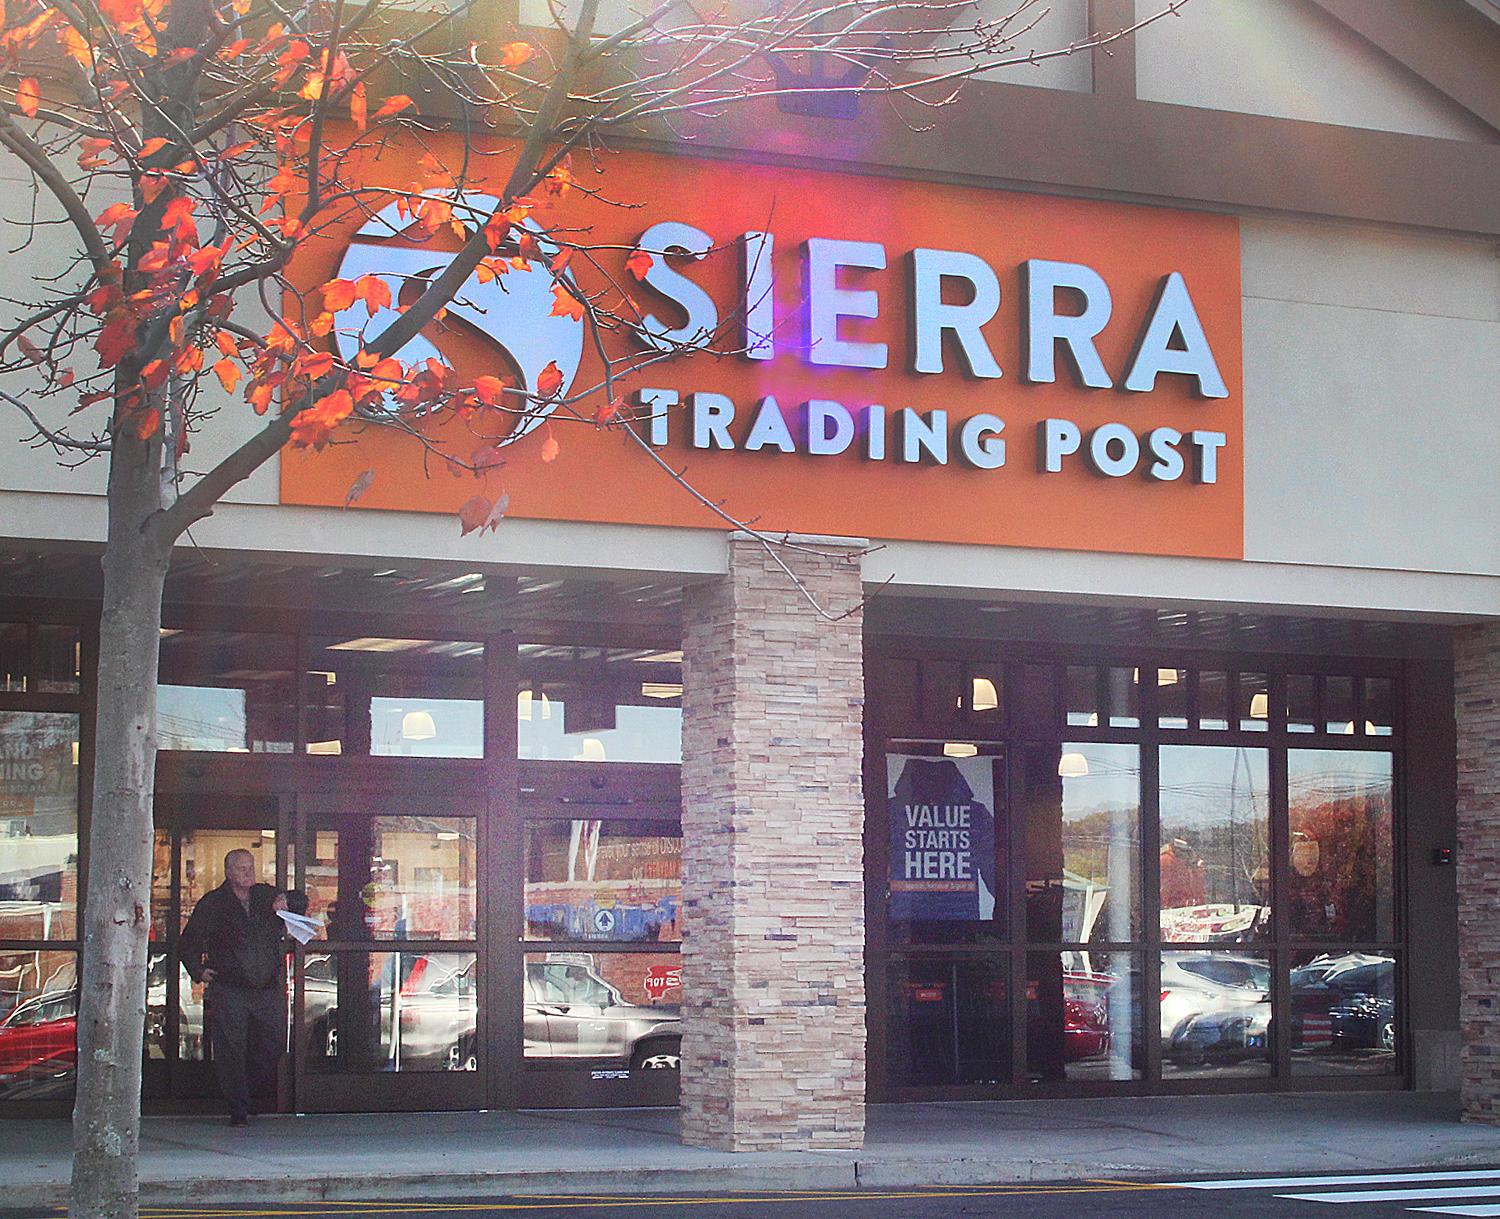 Outdoor retailer Sierra Trading Post opens in Danbury